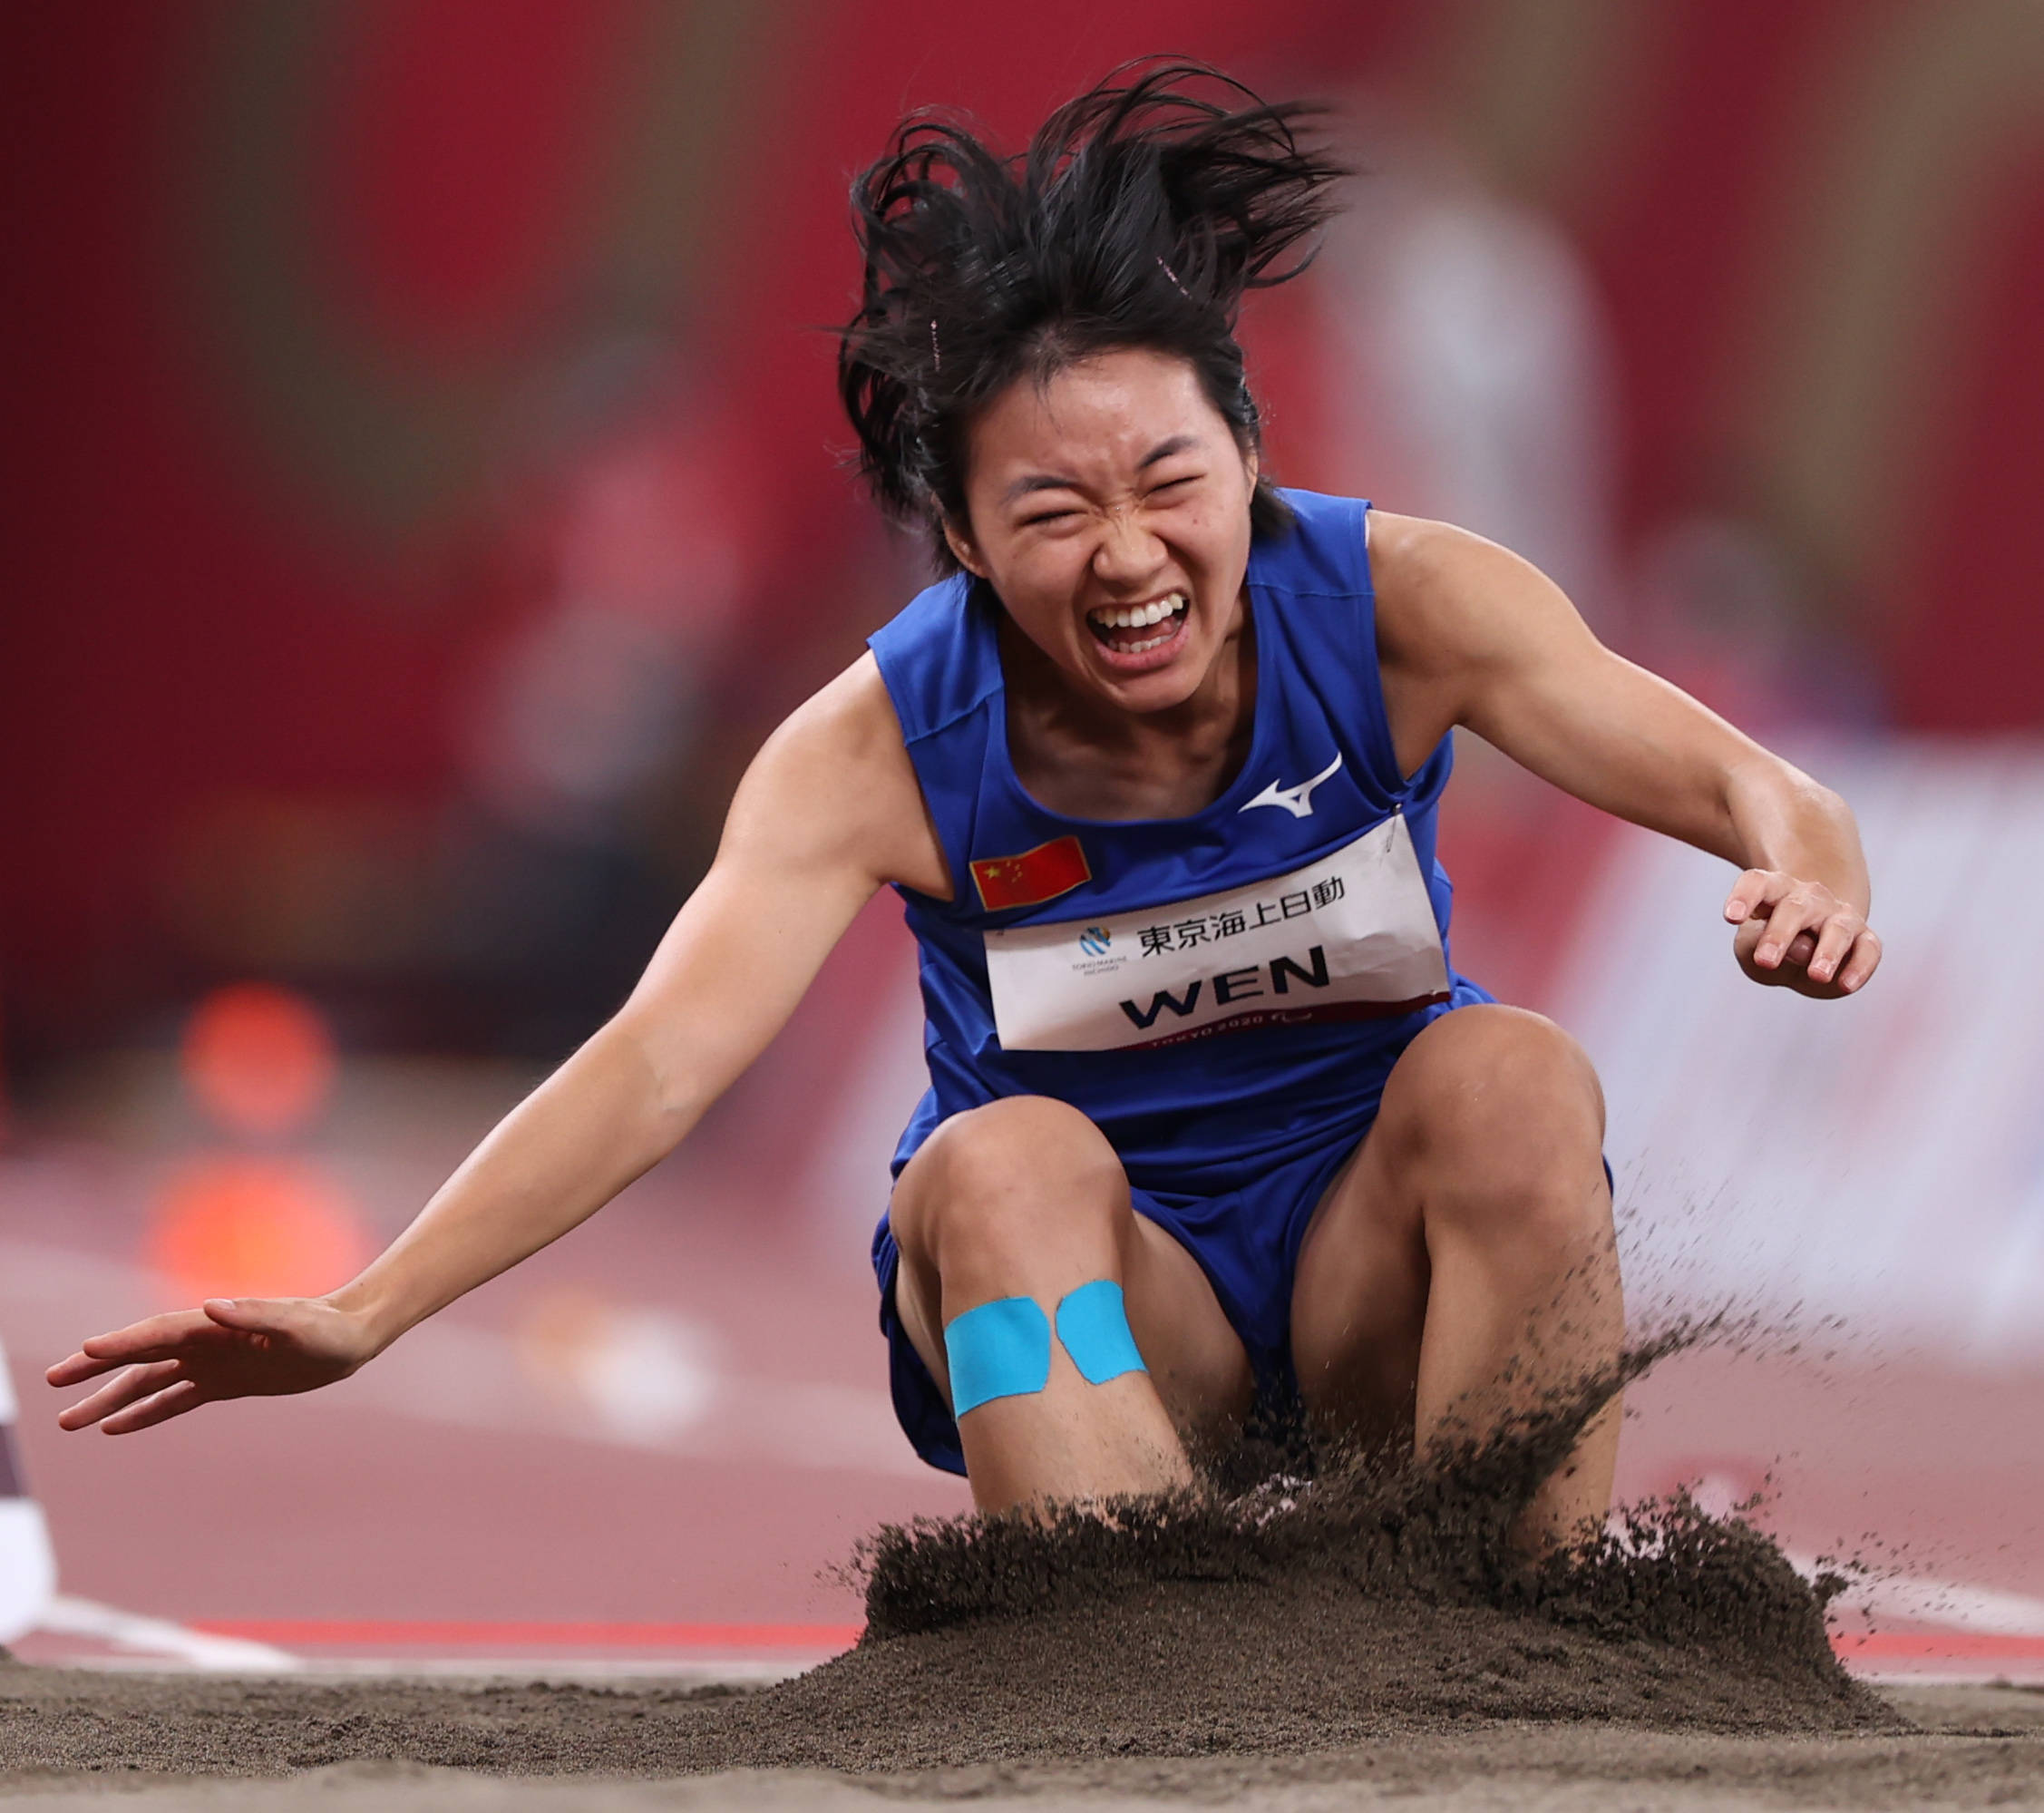 当日,在东京残奥会田径女子跳远t37级决赛中,中国选手文晓燕夺得冠军